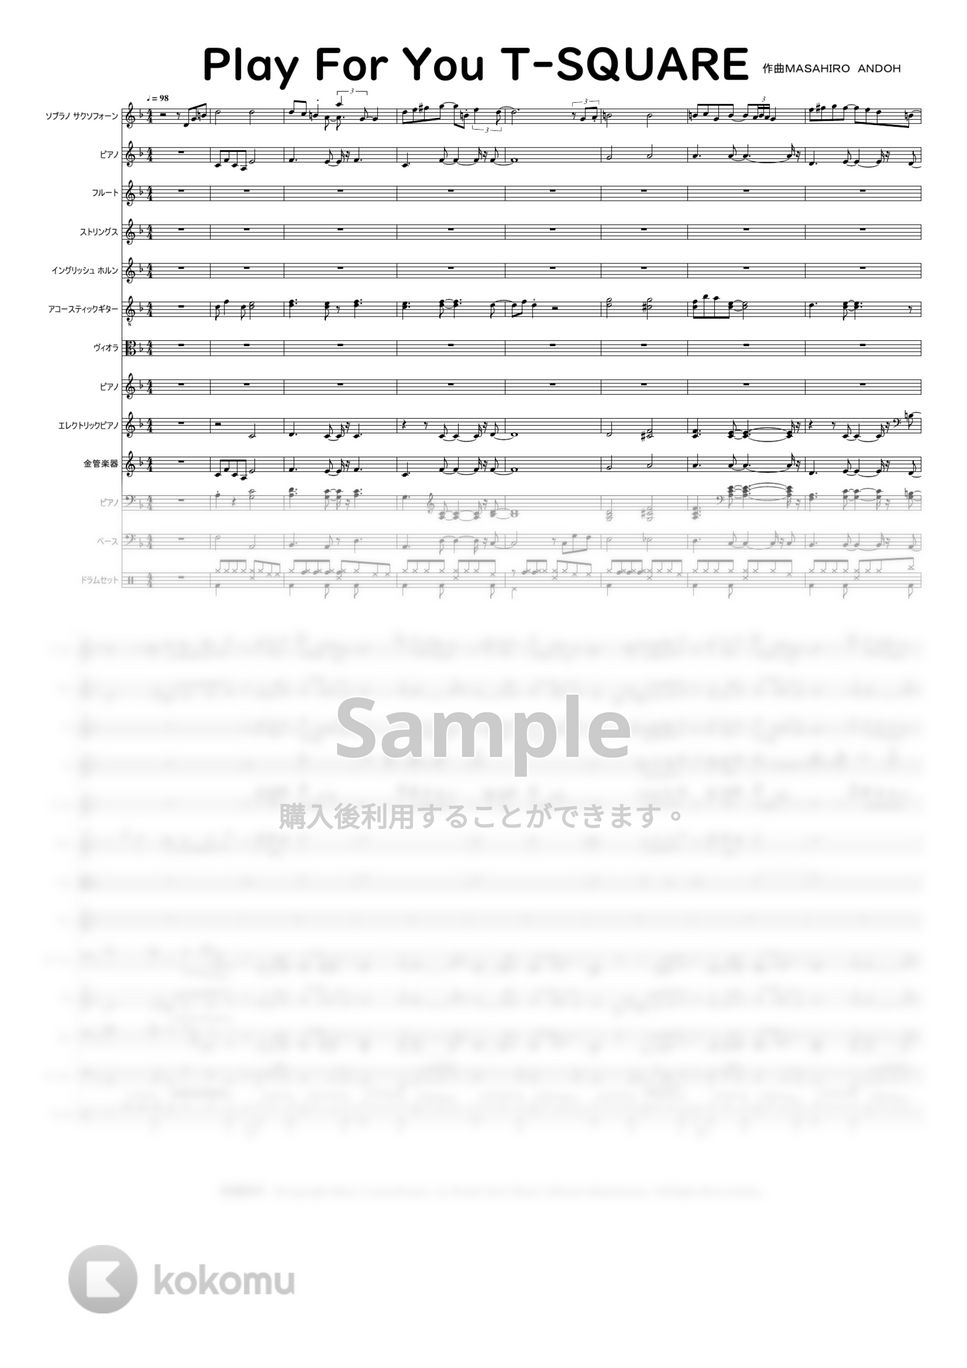 T-SQUARE  作曲：MASAHIRO ANDOH 安藤まさひろ - Play For You T-SQUARE by Mitsuru Minamiyama